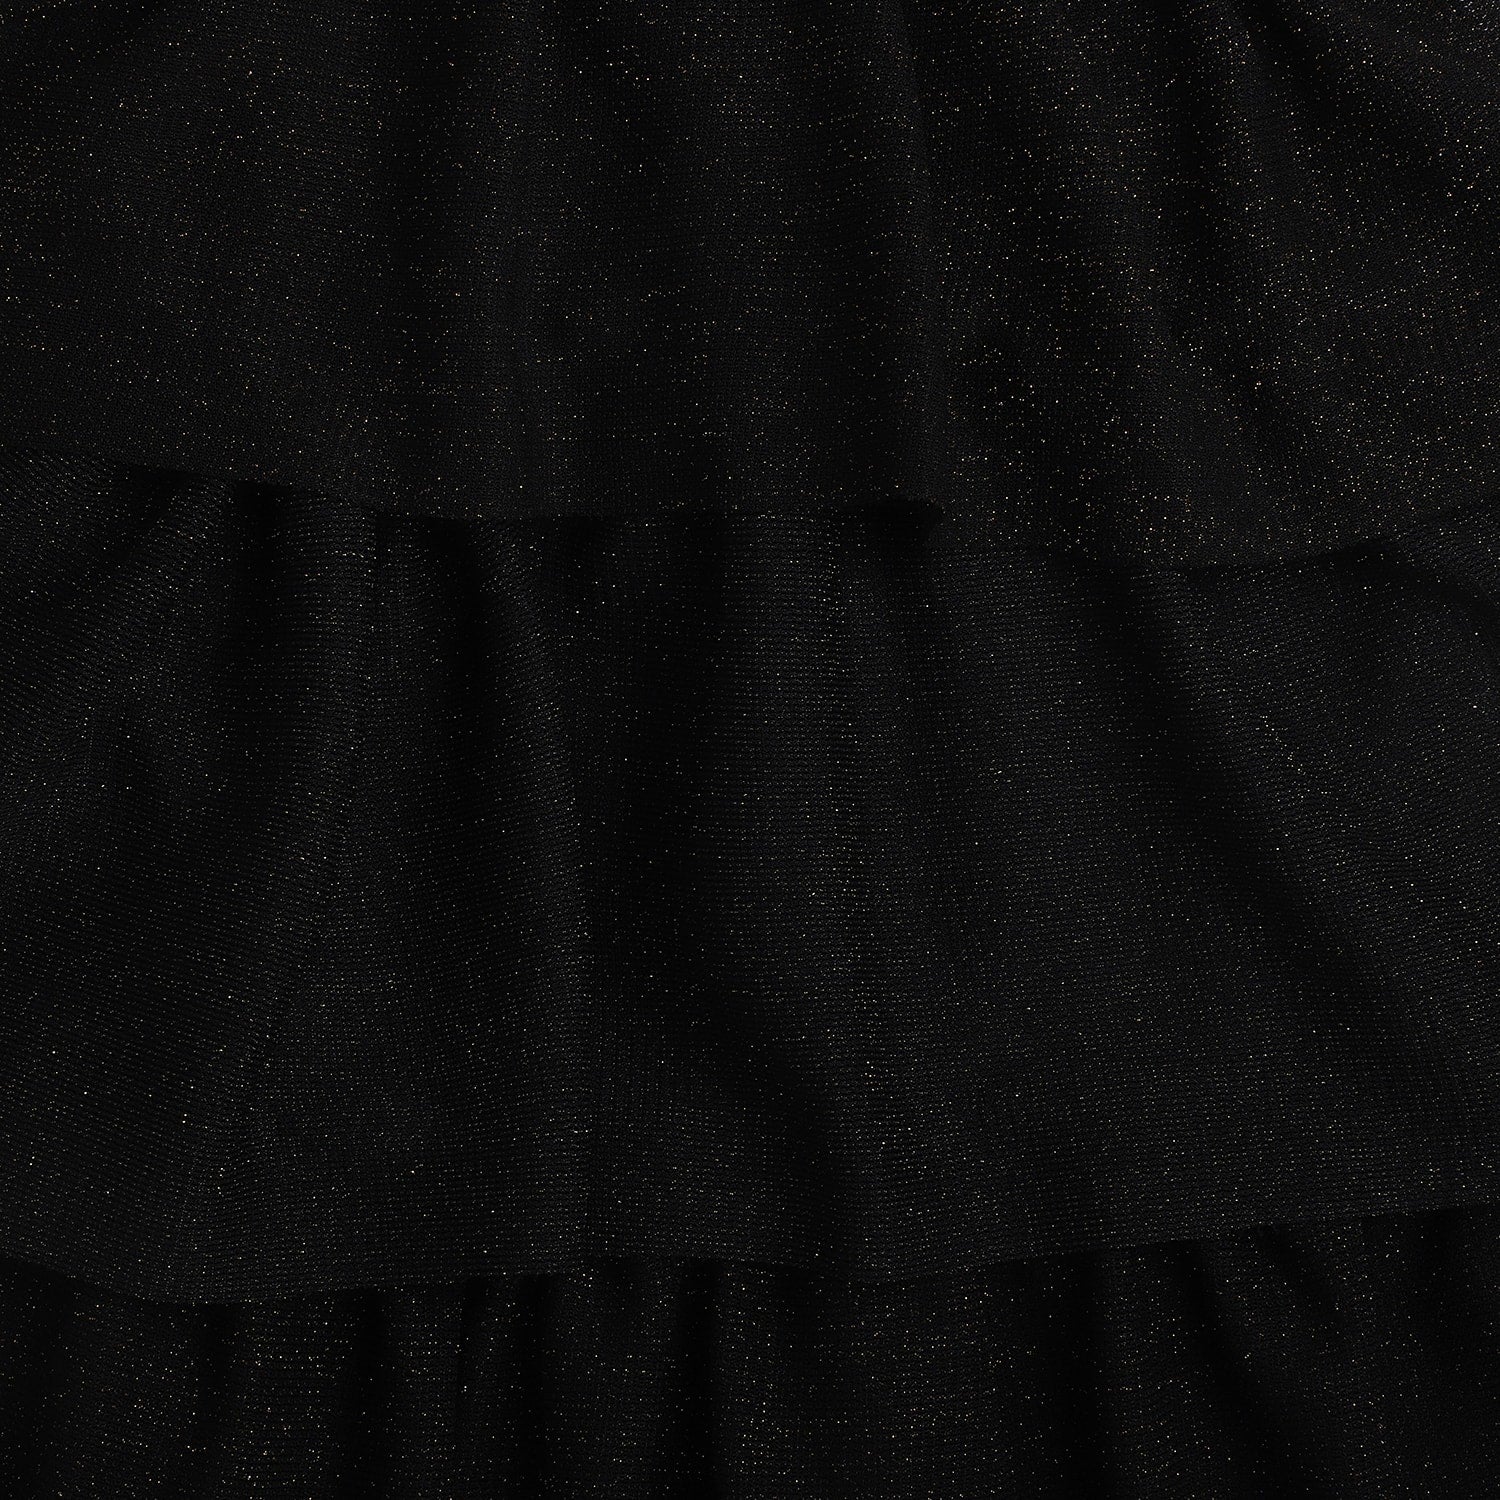 Girls Black Halter Neck Sleeveless Net Dress